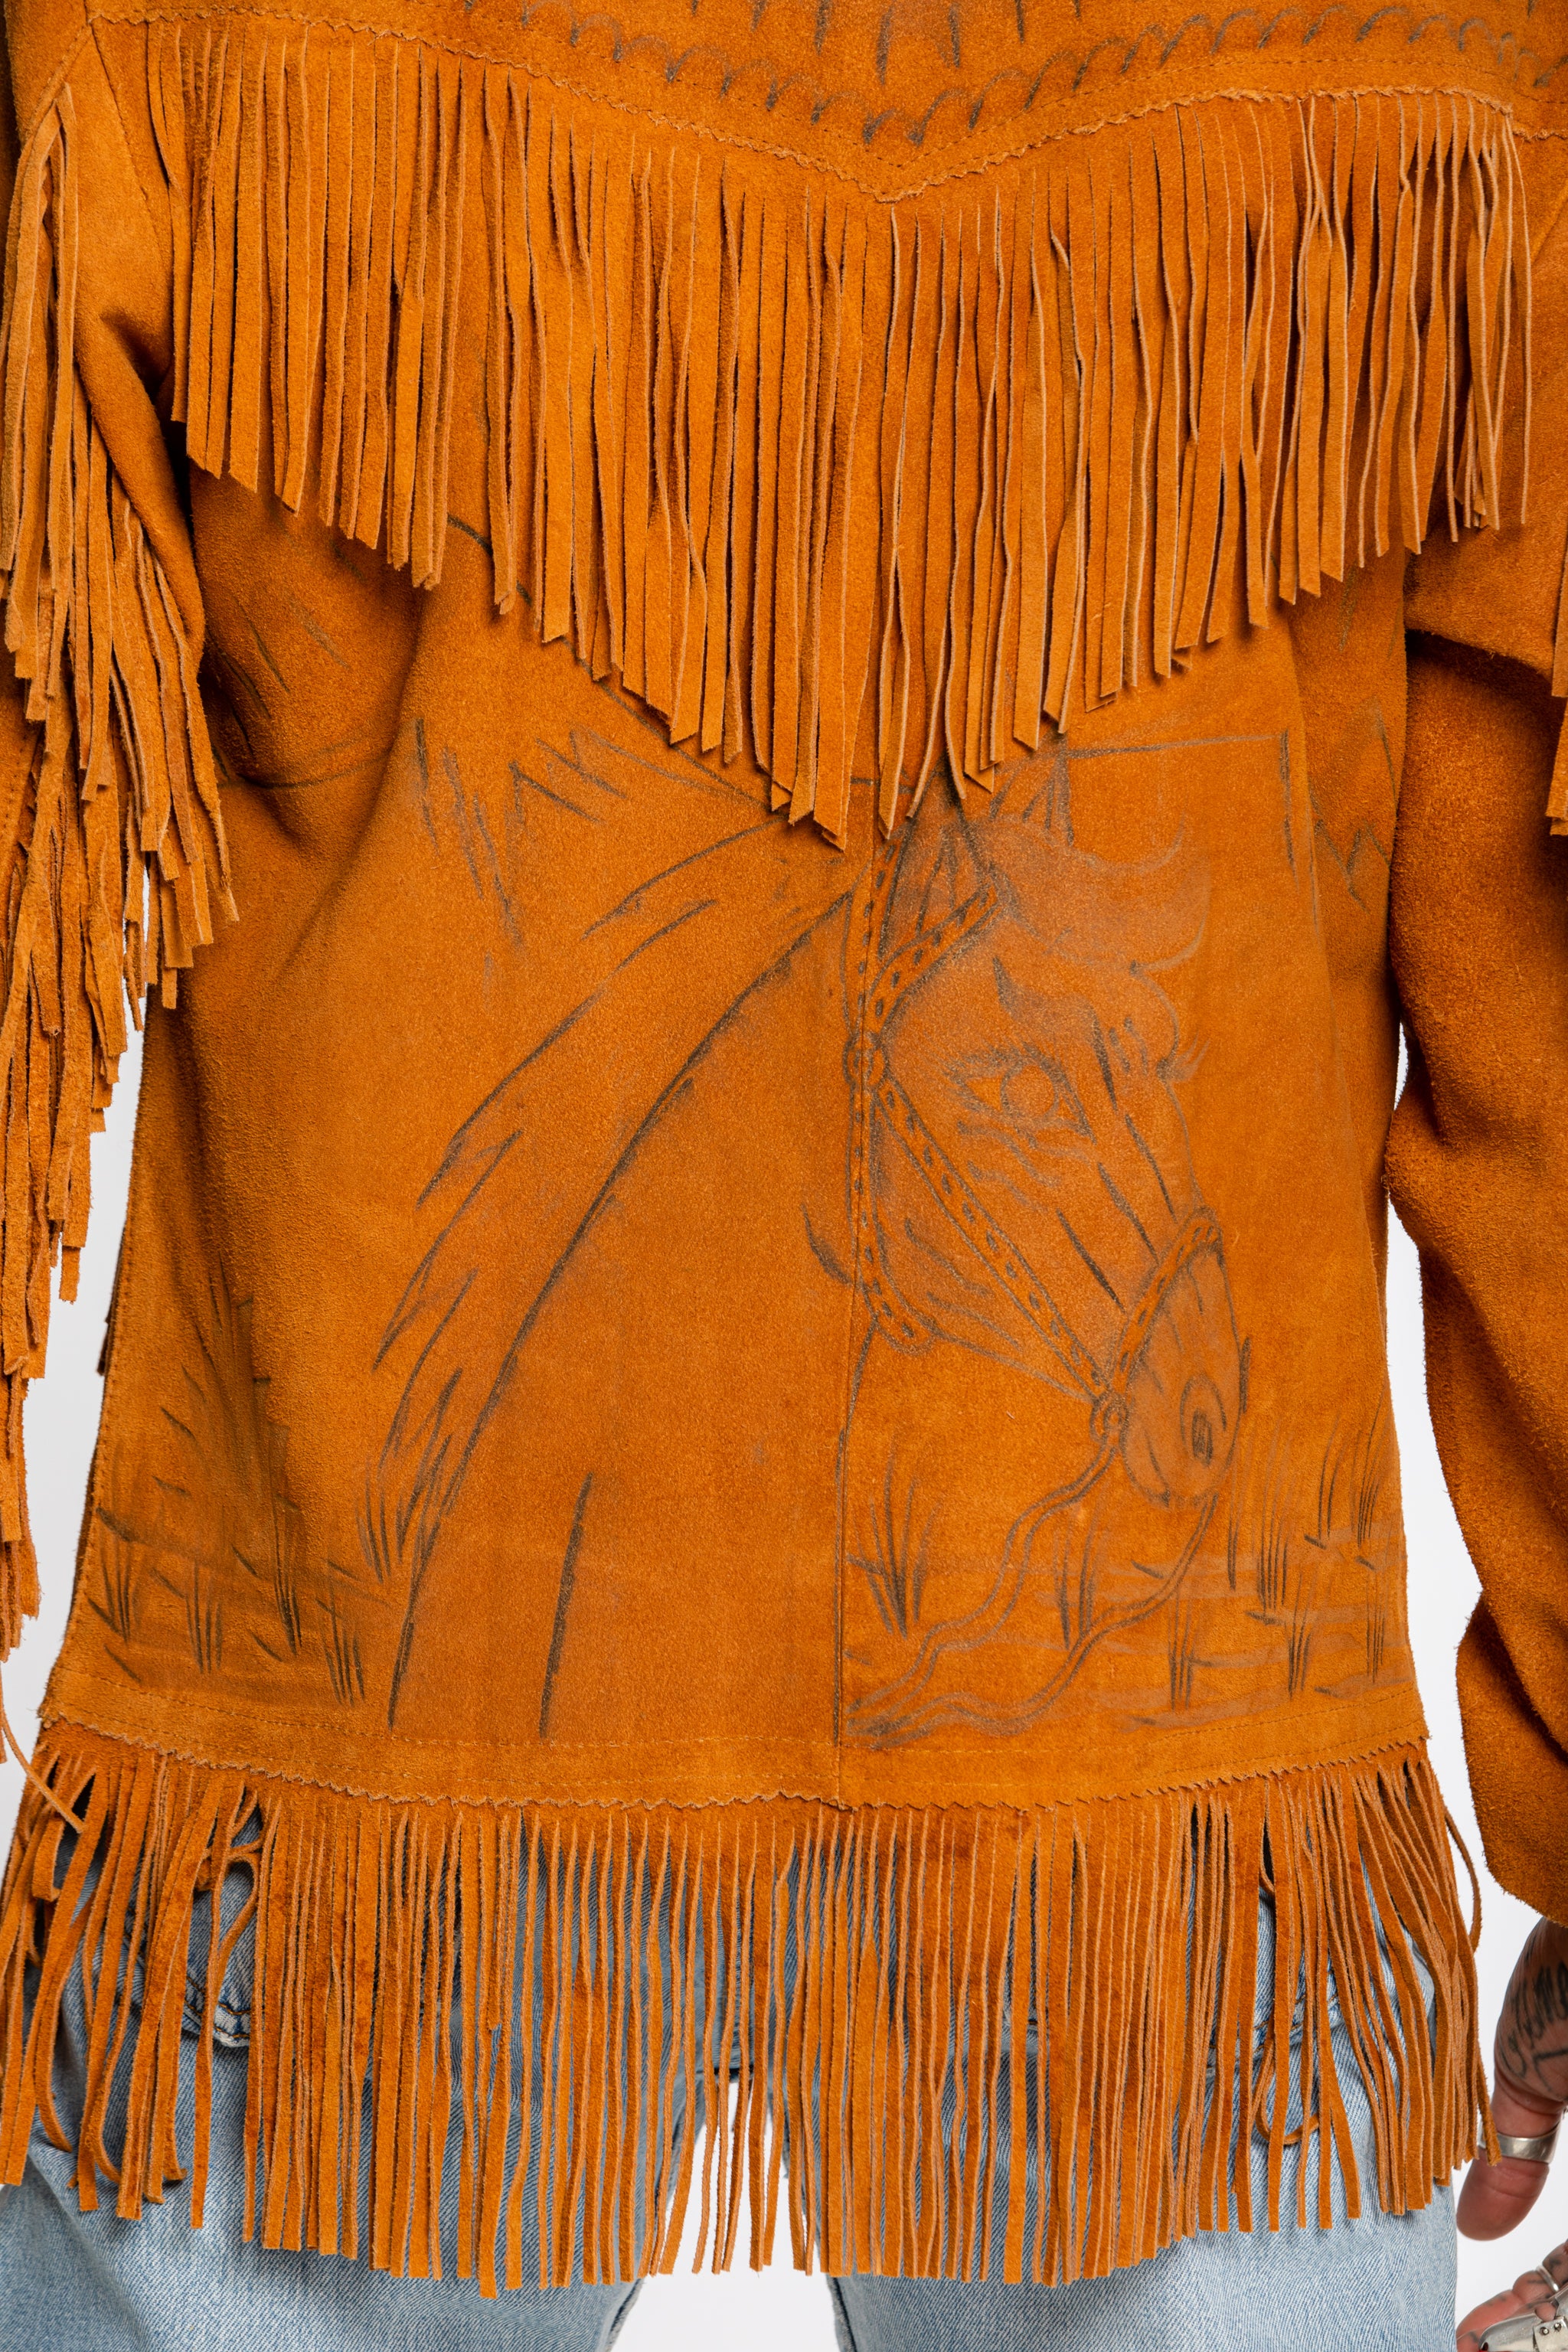 Vintage Fringed Suede Jacket Burnished Western Design (Men's Small